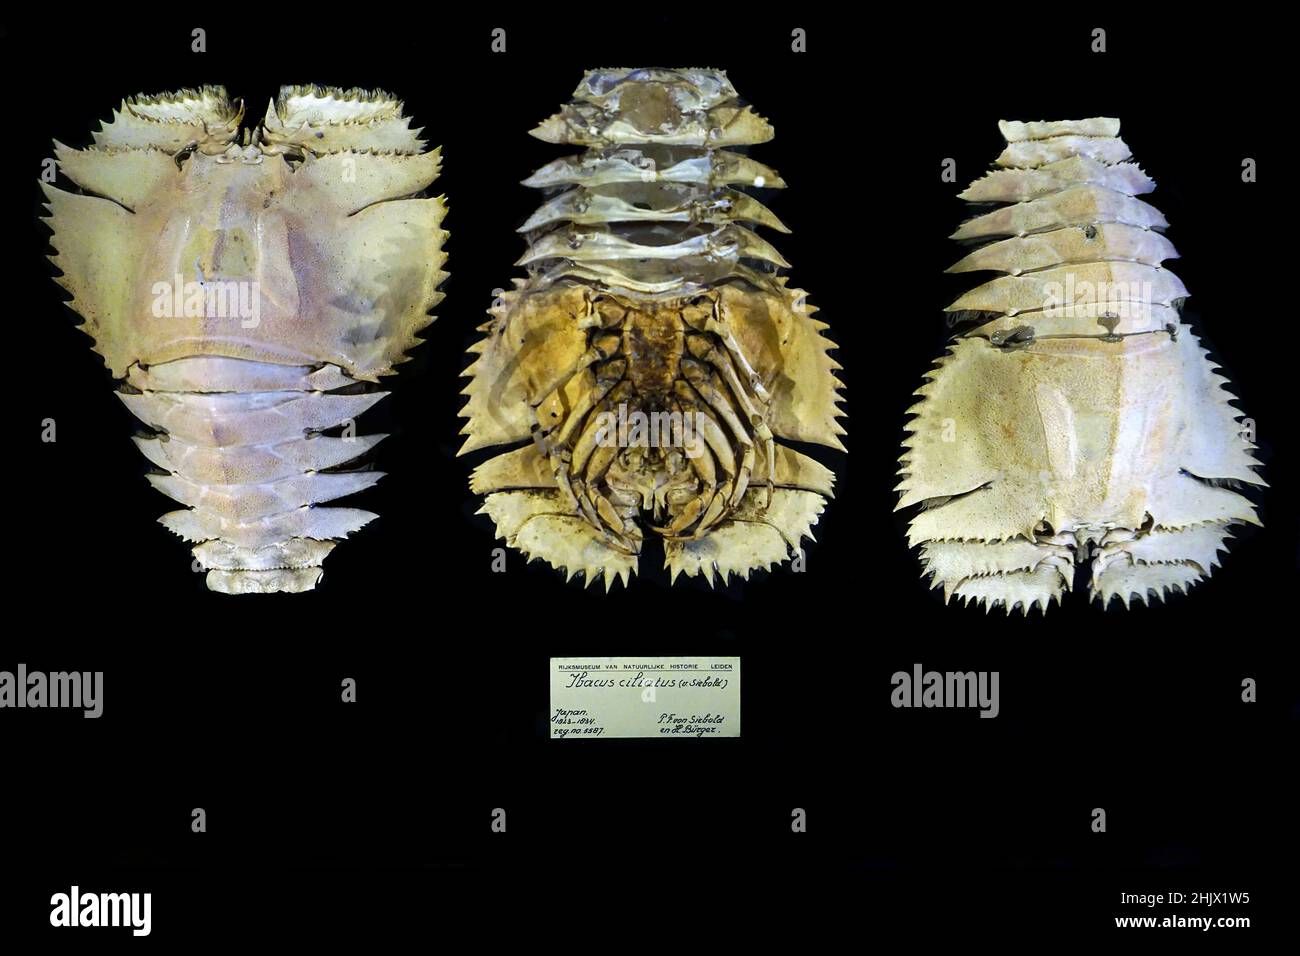 Ibacus ciliatus (von Siebold, 1824) le spécimen original trouvé par P.F.von Siebold et H.Burger au Japon 1823-1824. reg.no.5587 Ibacus ciliatus est une espèce de langoustine provenant du nord-ouest de l'océan Pacifique Banque D'Images